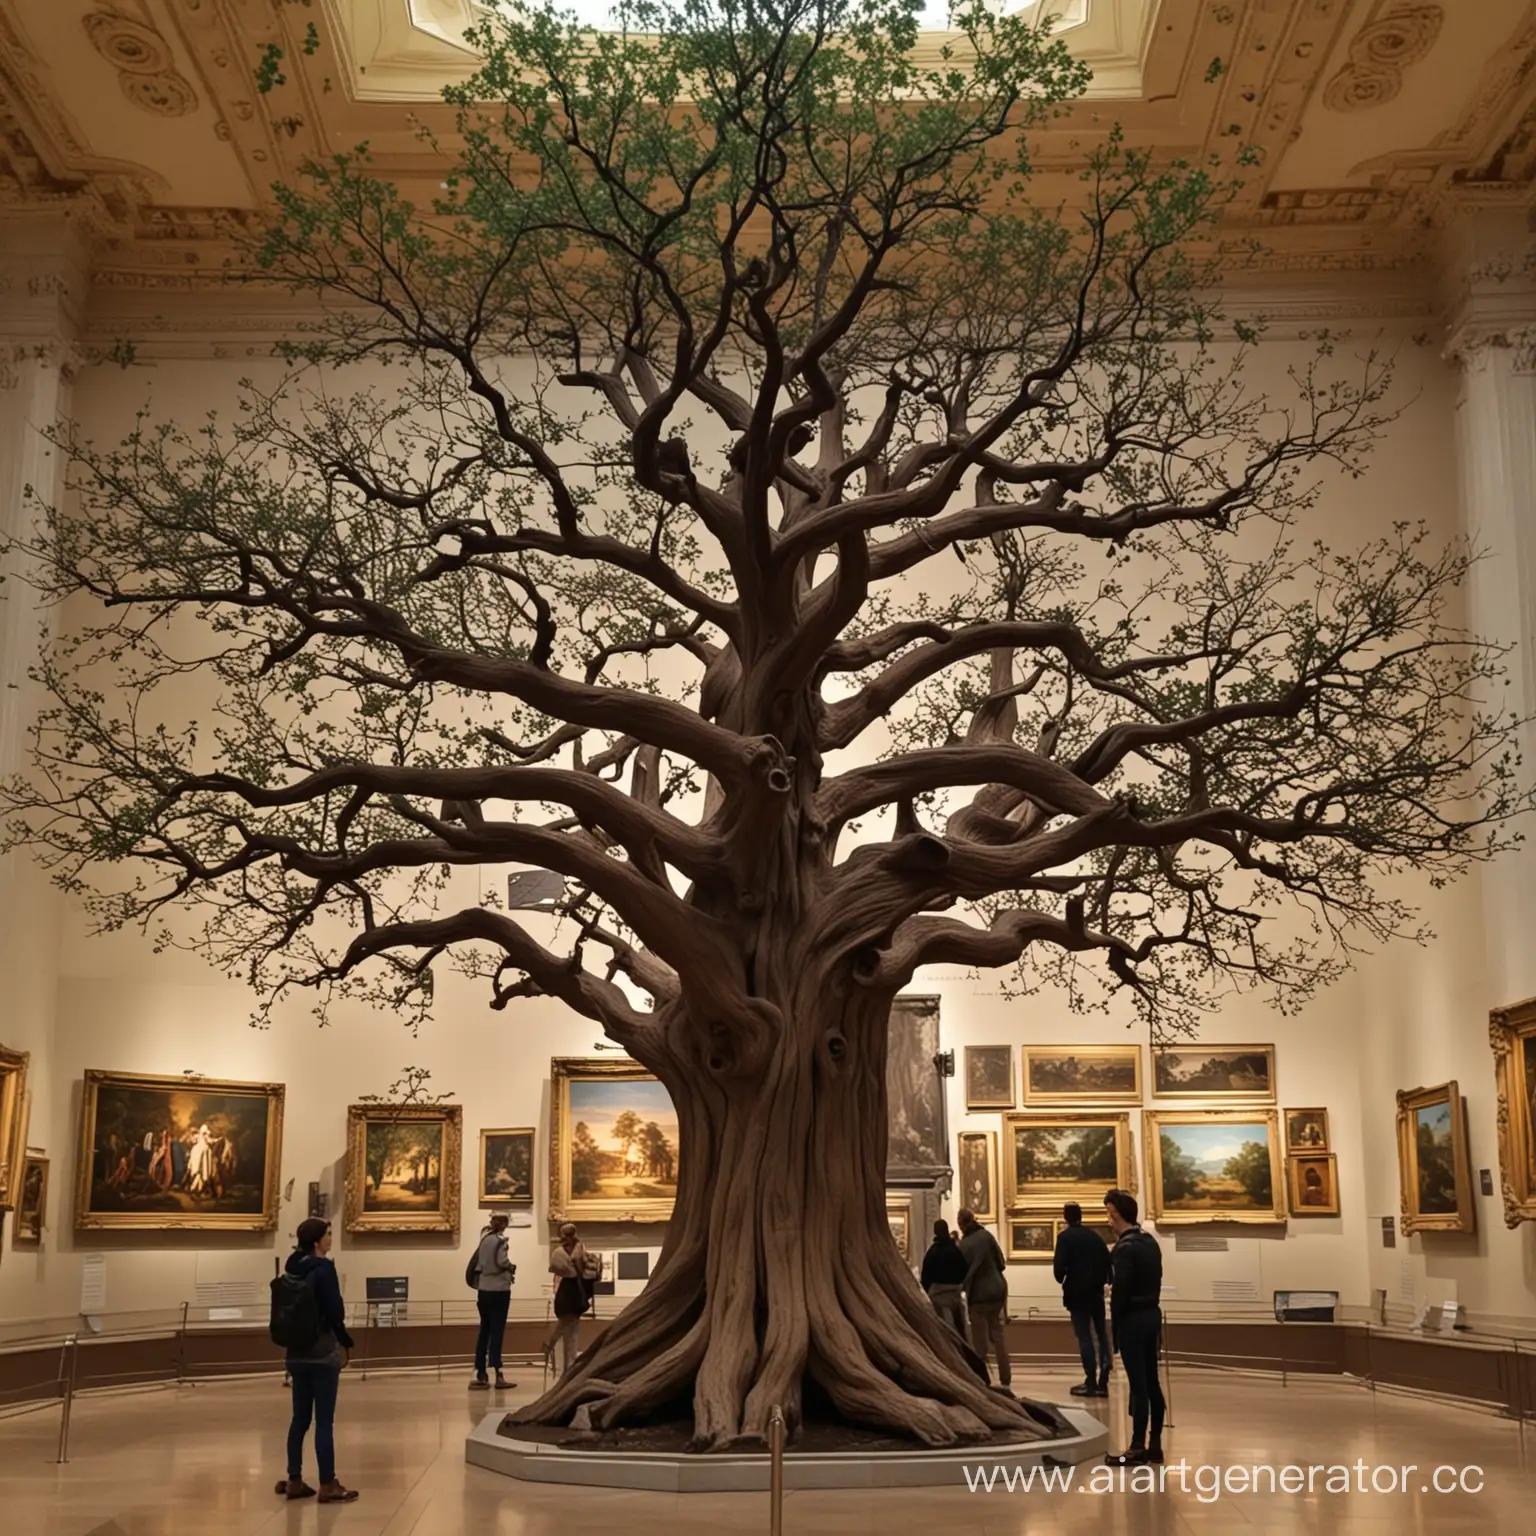 Дерево в музее, как экспонат, а я рядом люди рассматривают и удивляются